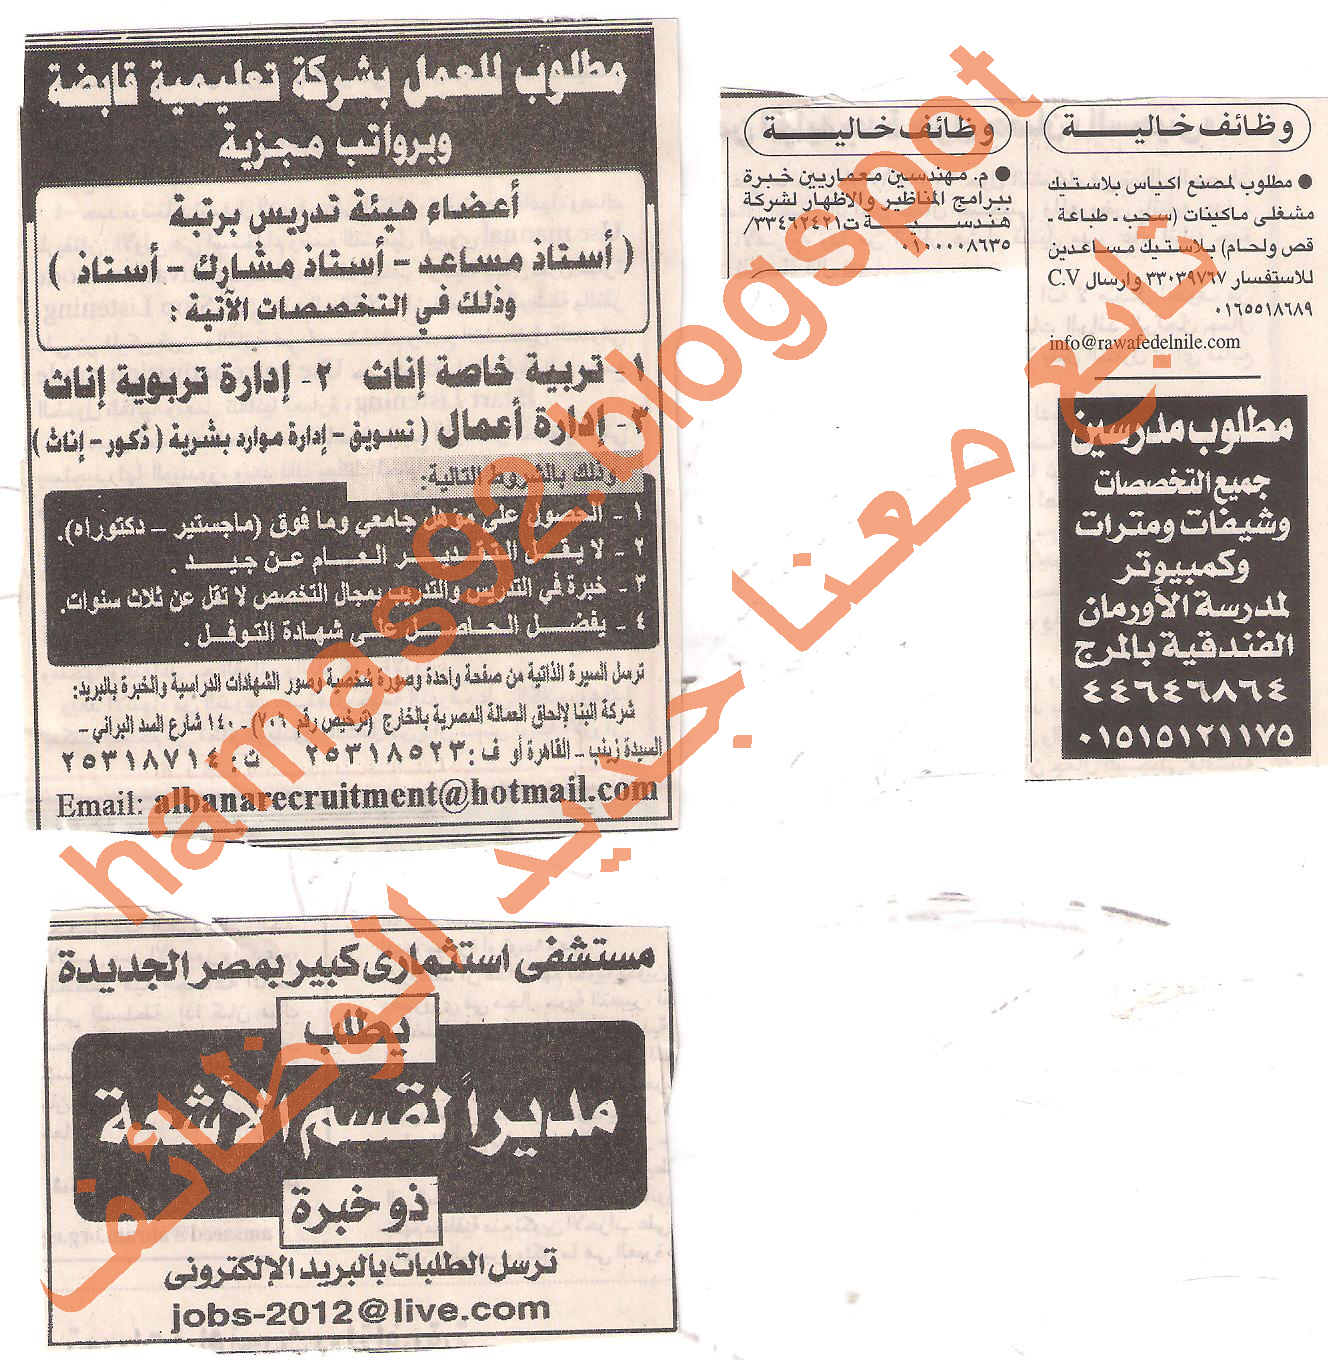 اعلانات وظائف جريدة الاهرام الثلاثاء 19 يوليو 2011 Picture+003